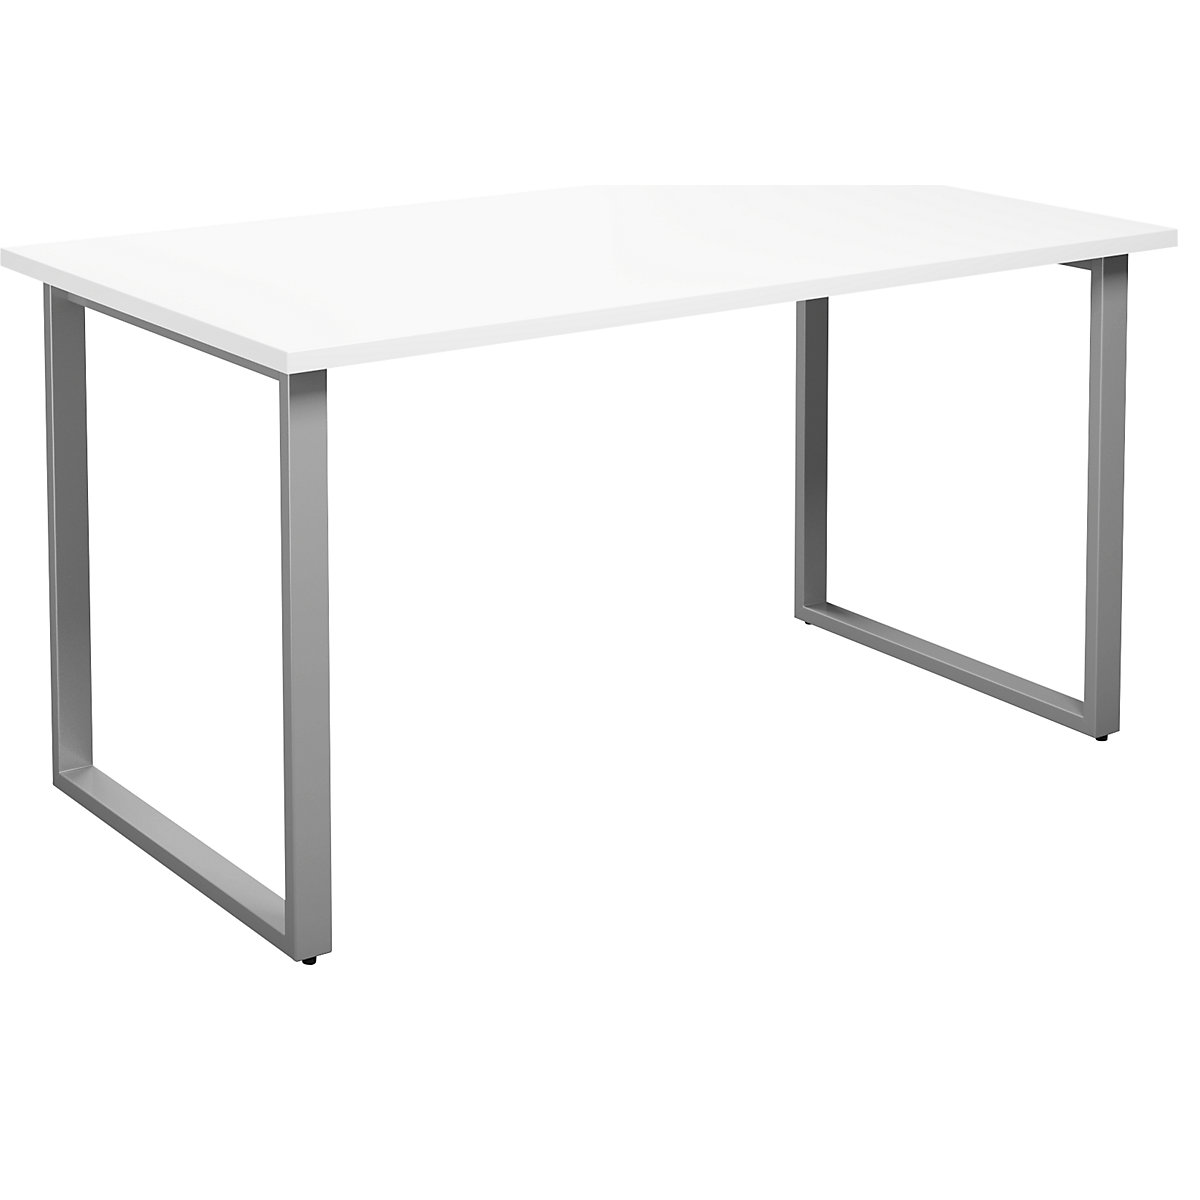 DUO-O multi-purpose desk, straight tabletop, WxD 1400 x 800 mm, white, silver-15